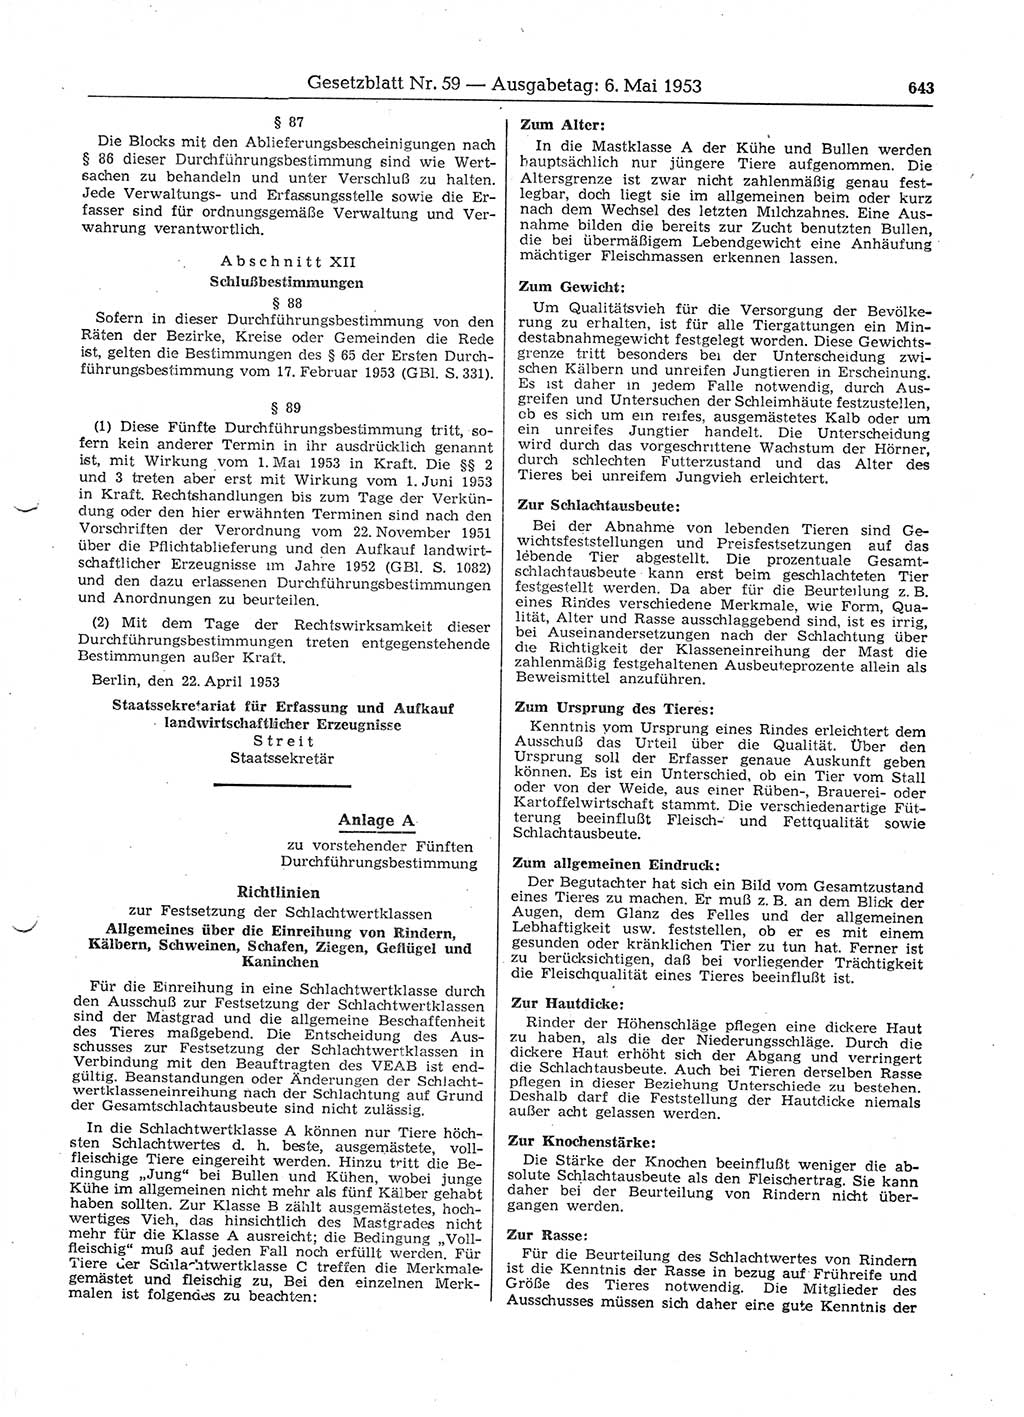 Gesetzblatt (GBl.) der Deutschen Demokratischen Republik (DDR) 1953, Seite 643 (GBl. DDR 1953, S. 643)